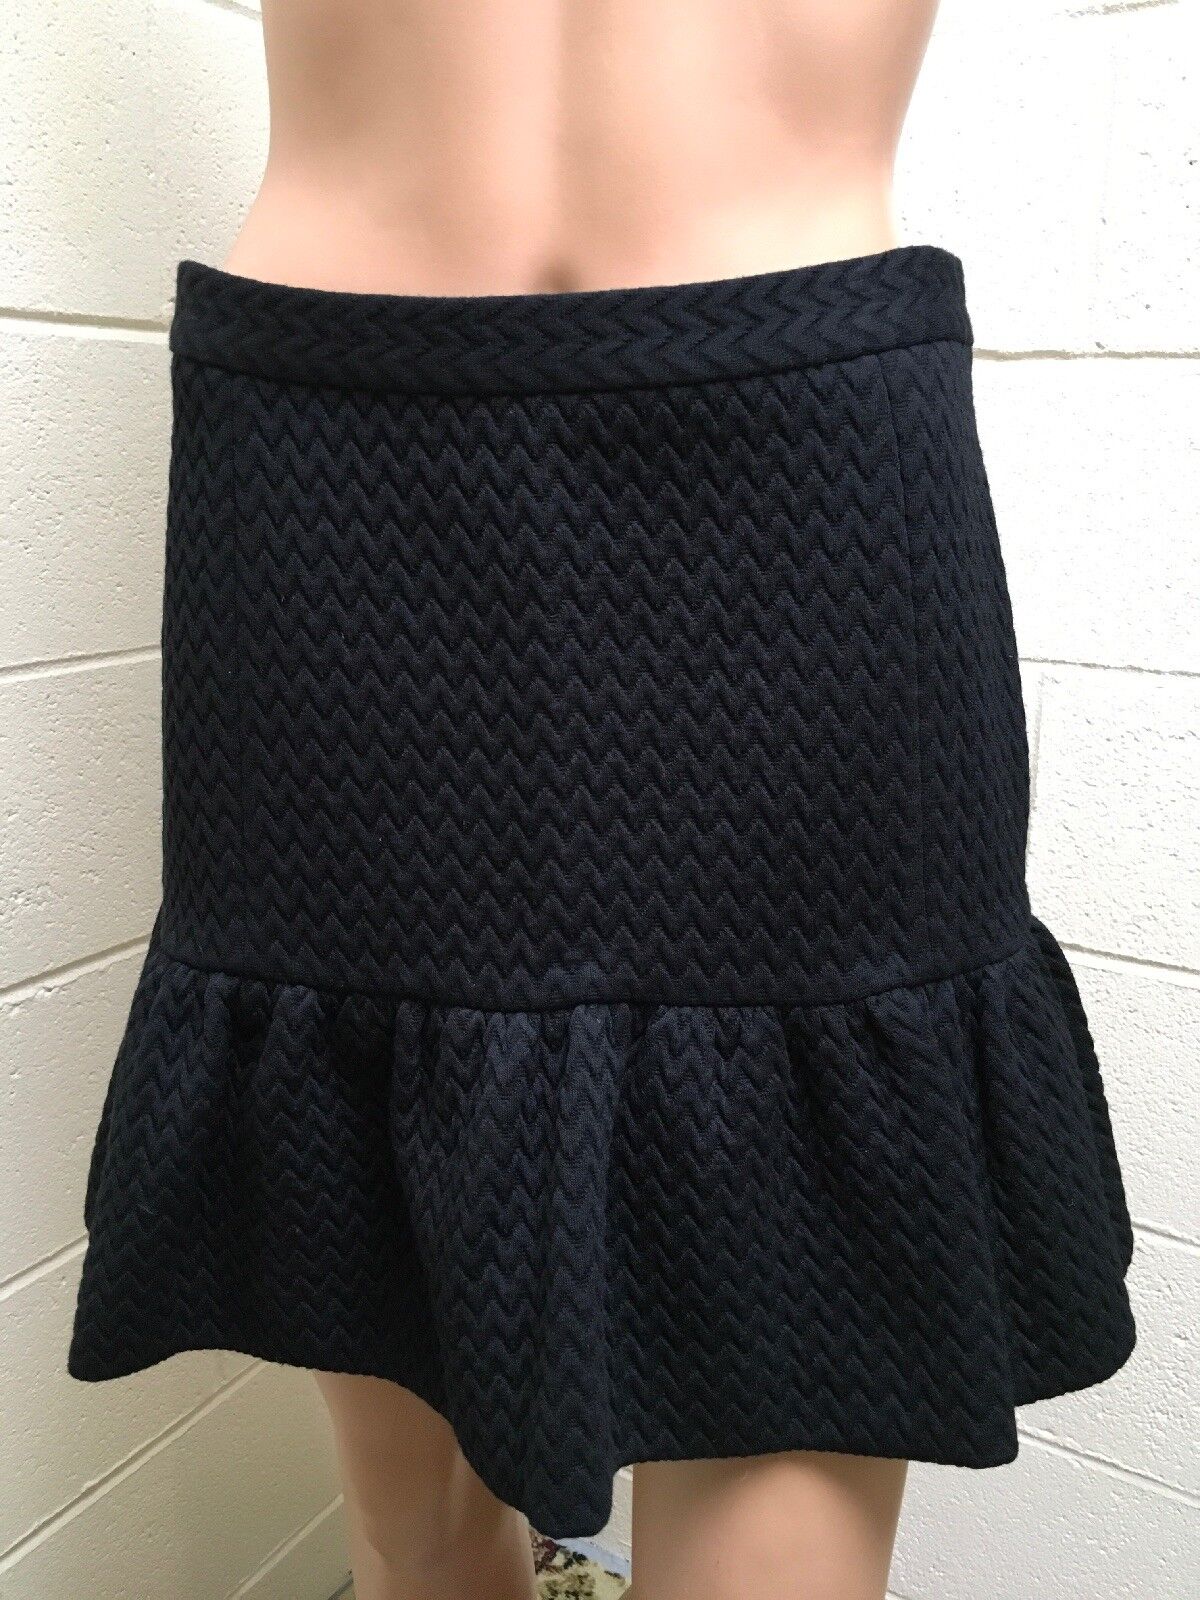 M Missoni Black Skirt Size 42 NWT Retail:$375